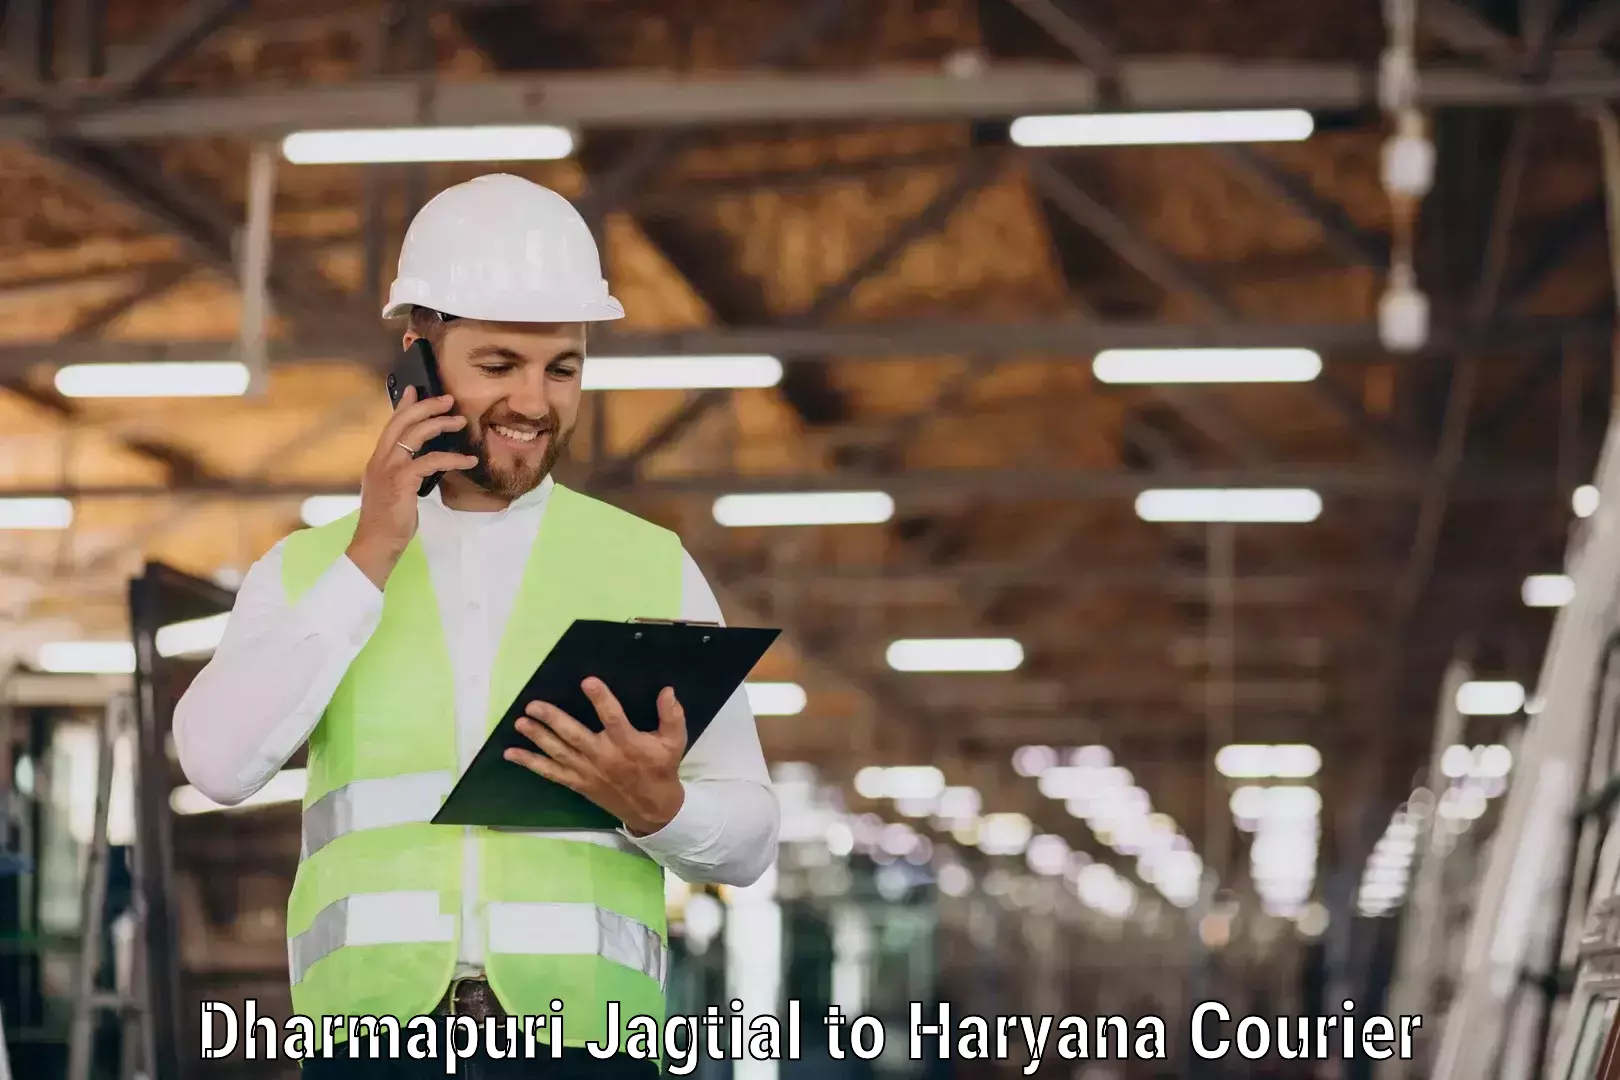 Courier service efficiency Dharmapuri Jagtial to Mandi Dabwali